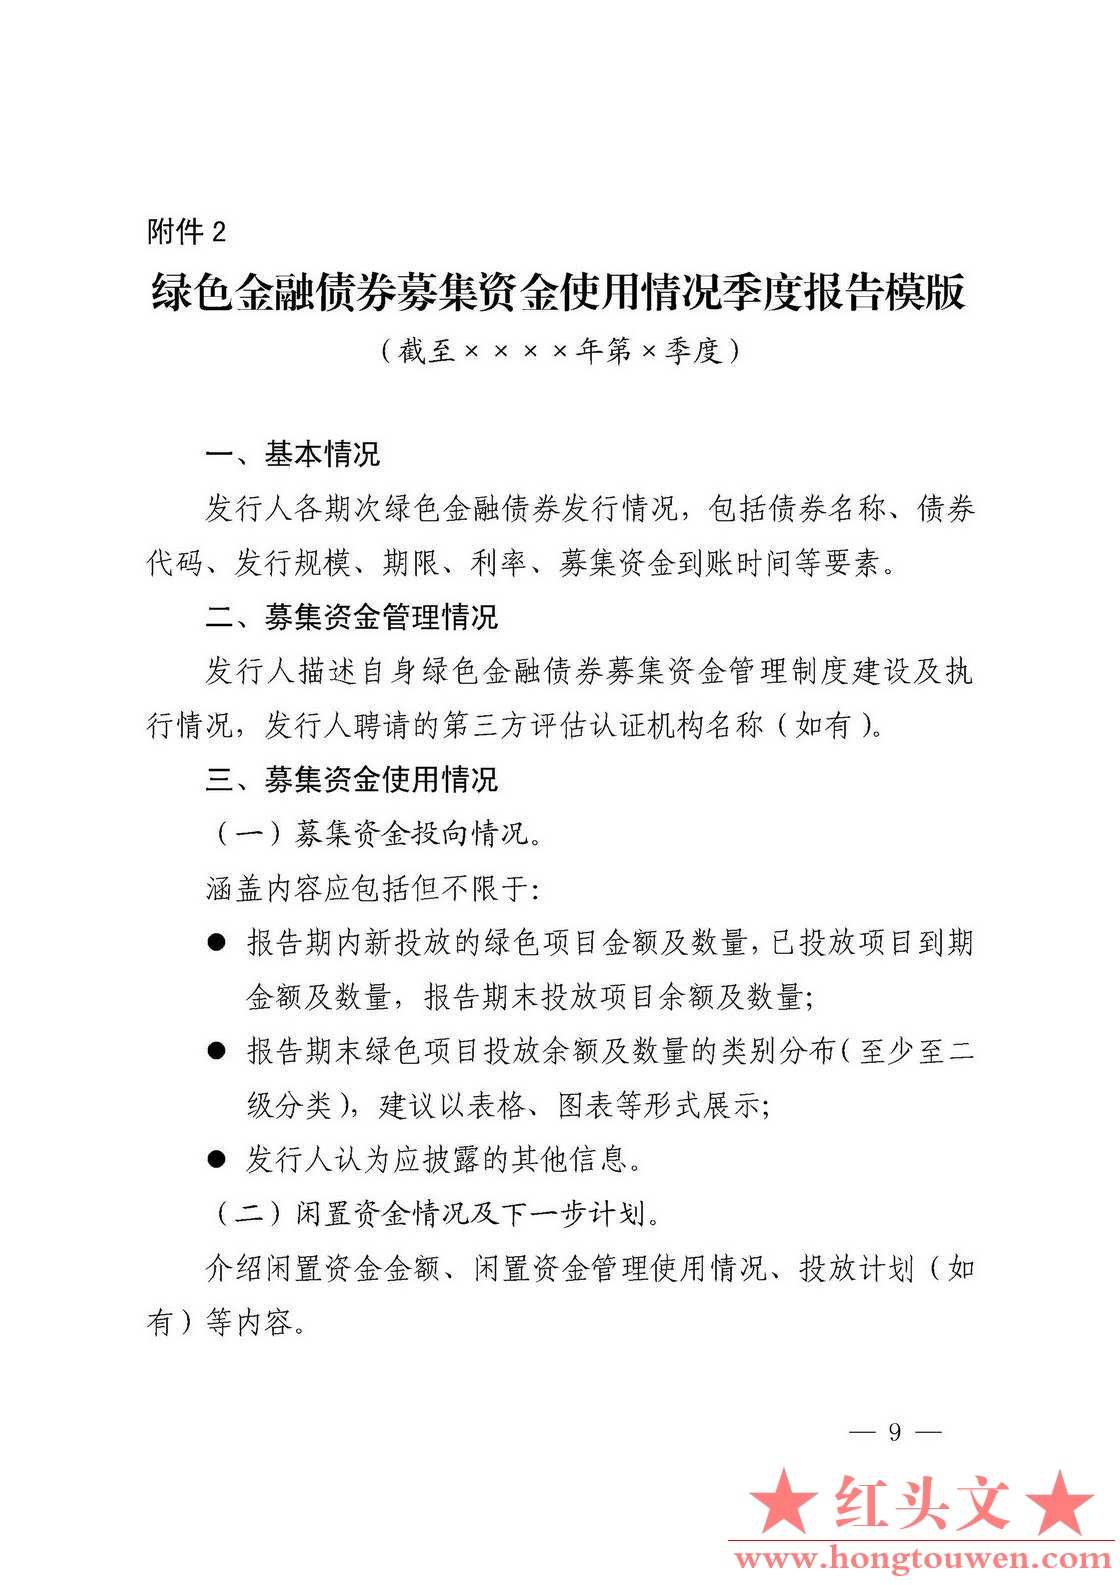 银发[2018]29号-中国人民银行关于加强绿色金融在全存续监督管理有关事宜的通知_页面_0.jpg